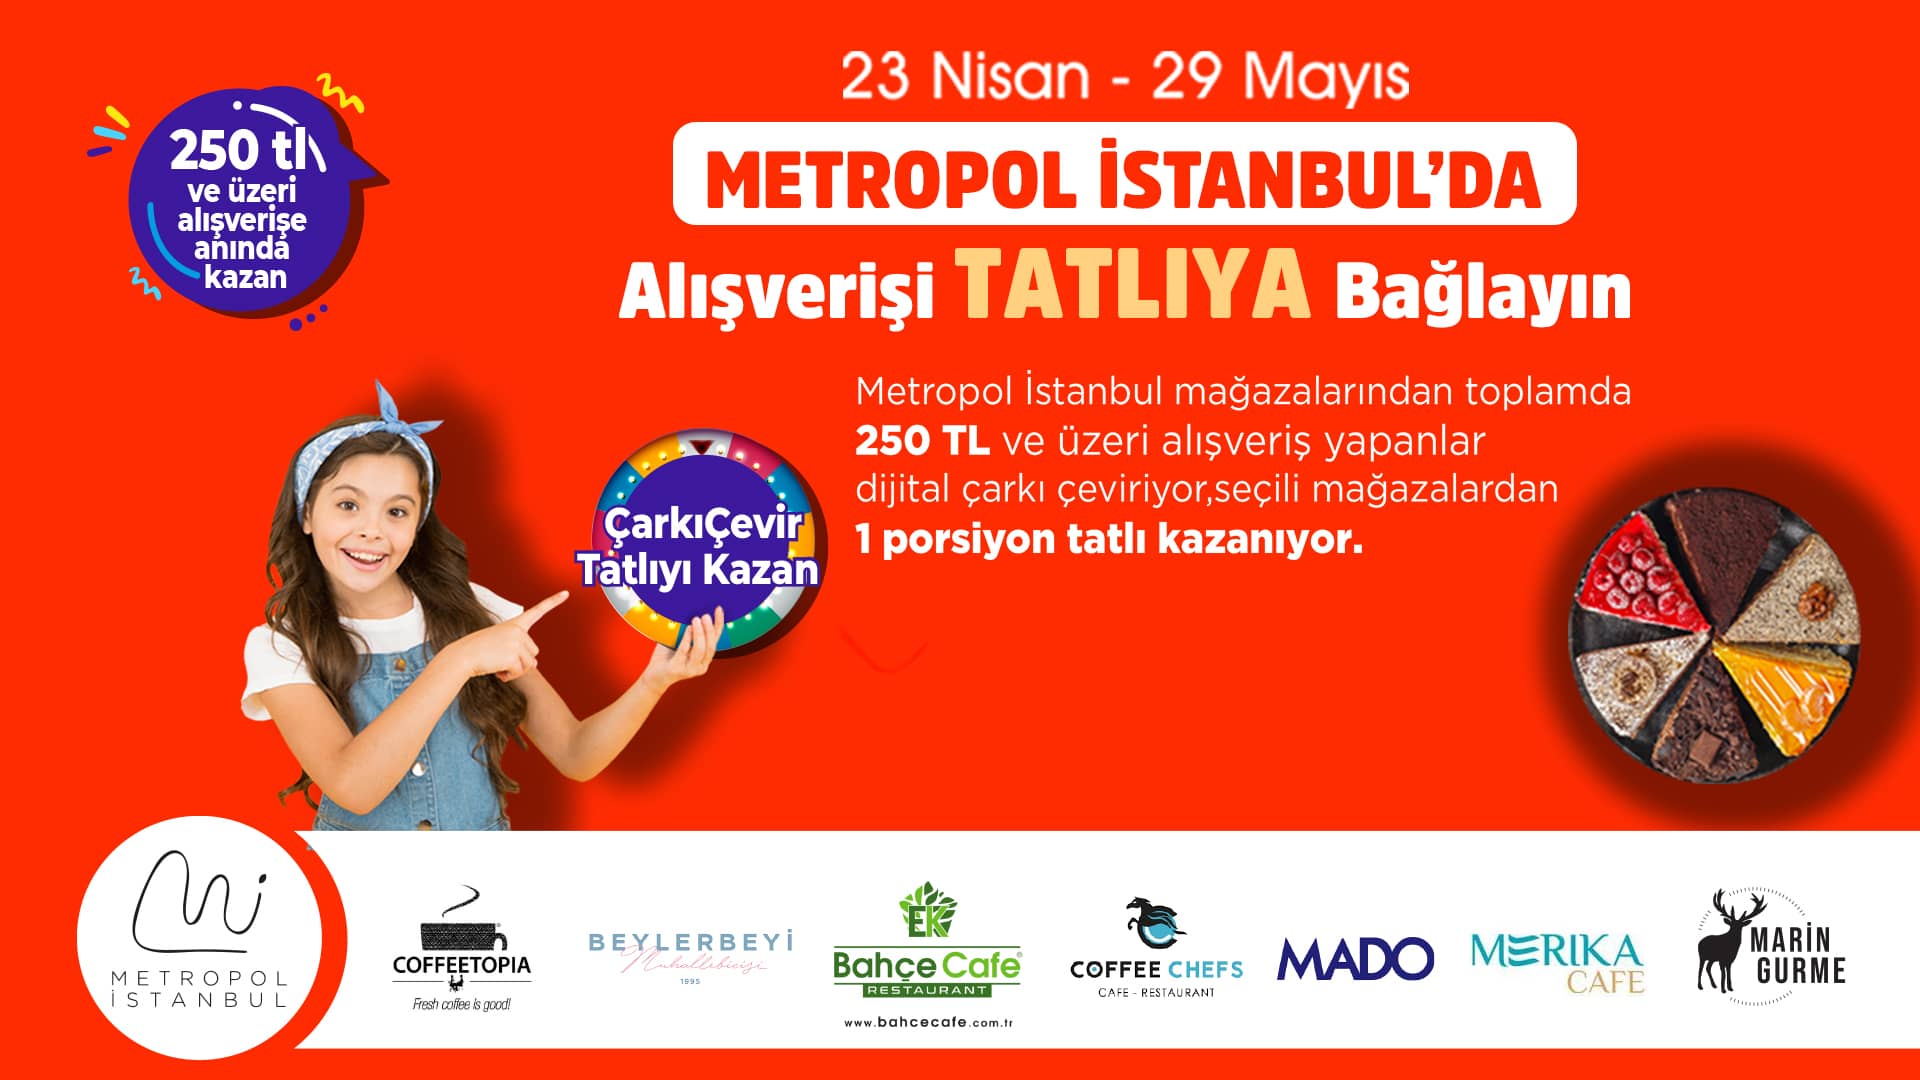 Metropol İstanbul'dan Alışverişi Tatlıya Bağlayan Kampanya!